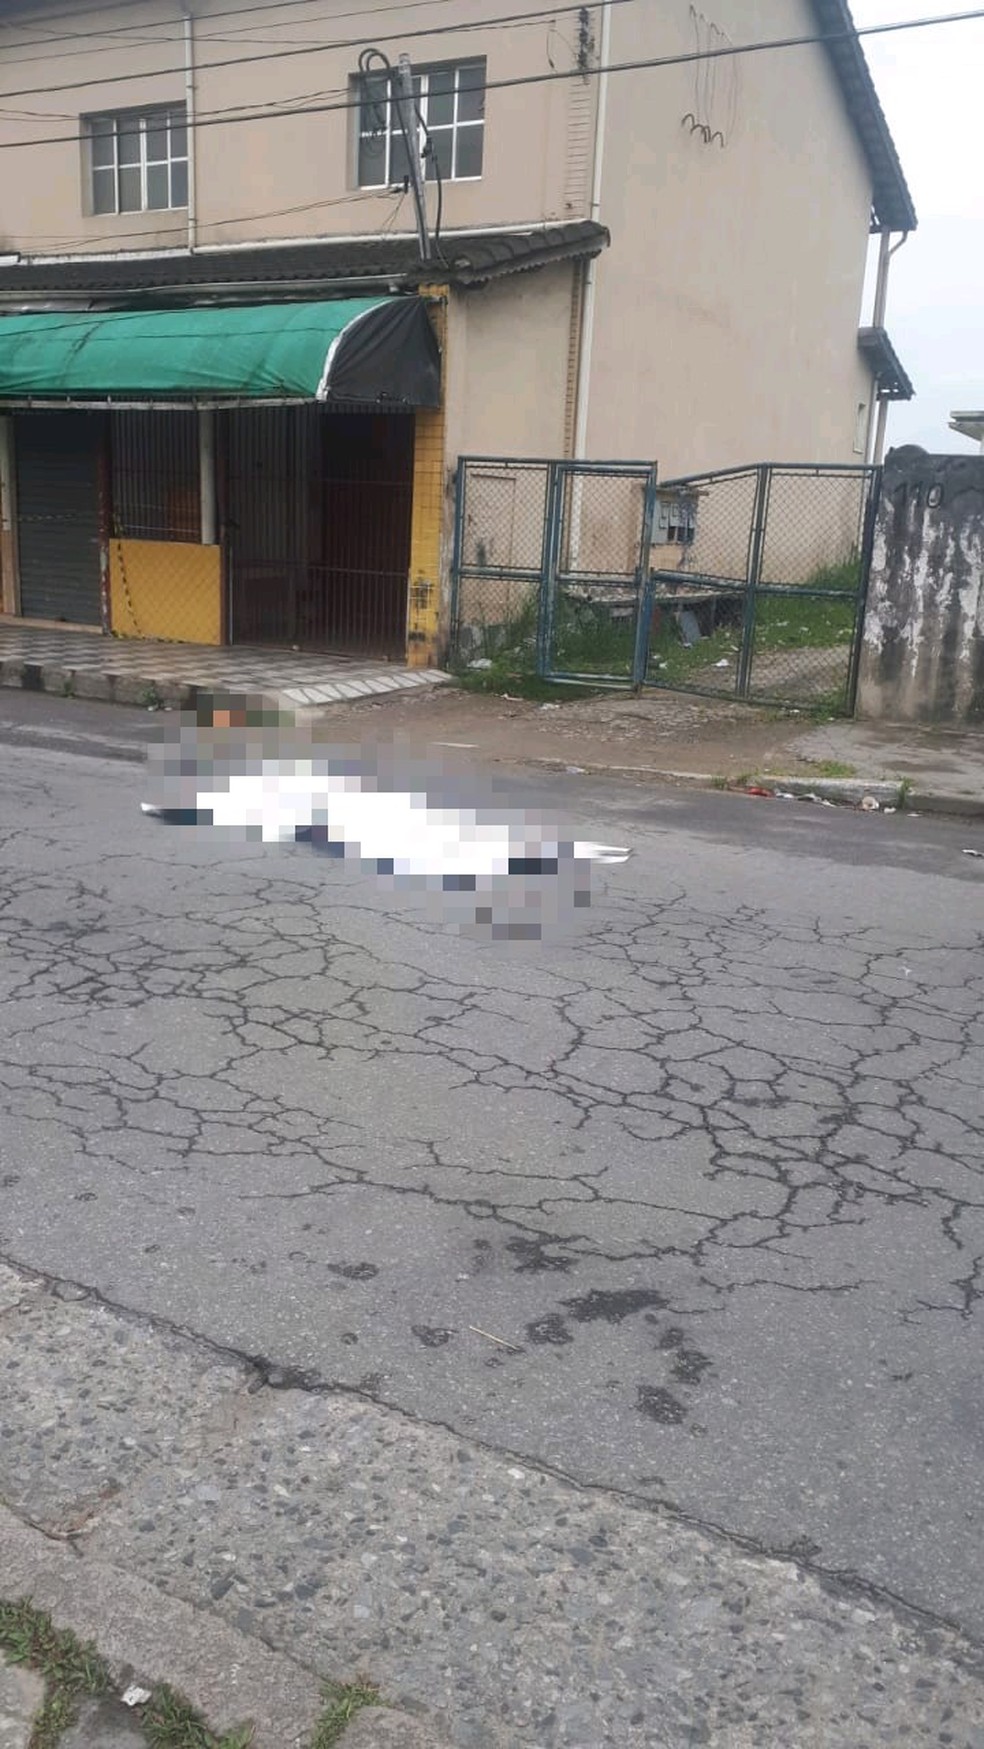 Criminoso matou quatro pessoas e cometeu suicídio em seguida, em São Vicente — Foto: G1 Santos